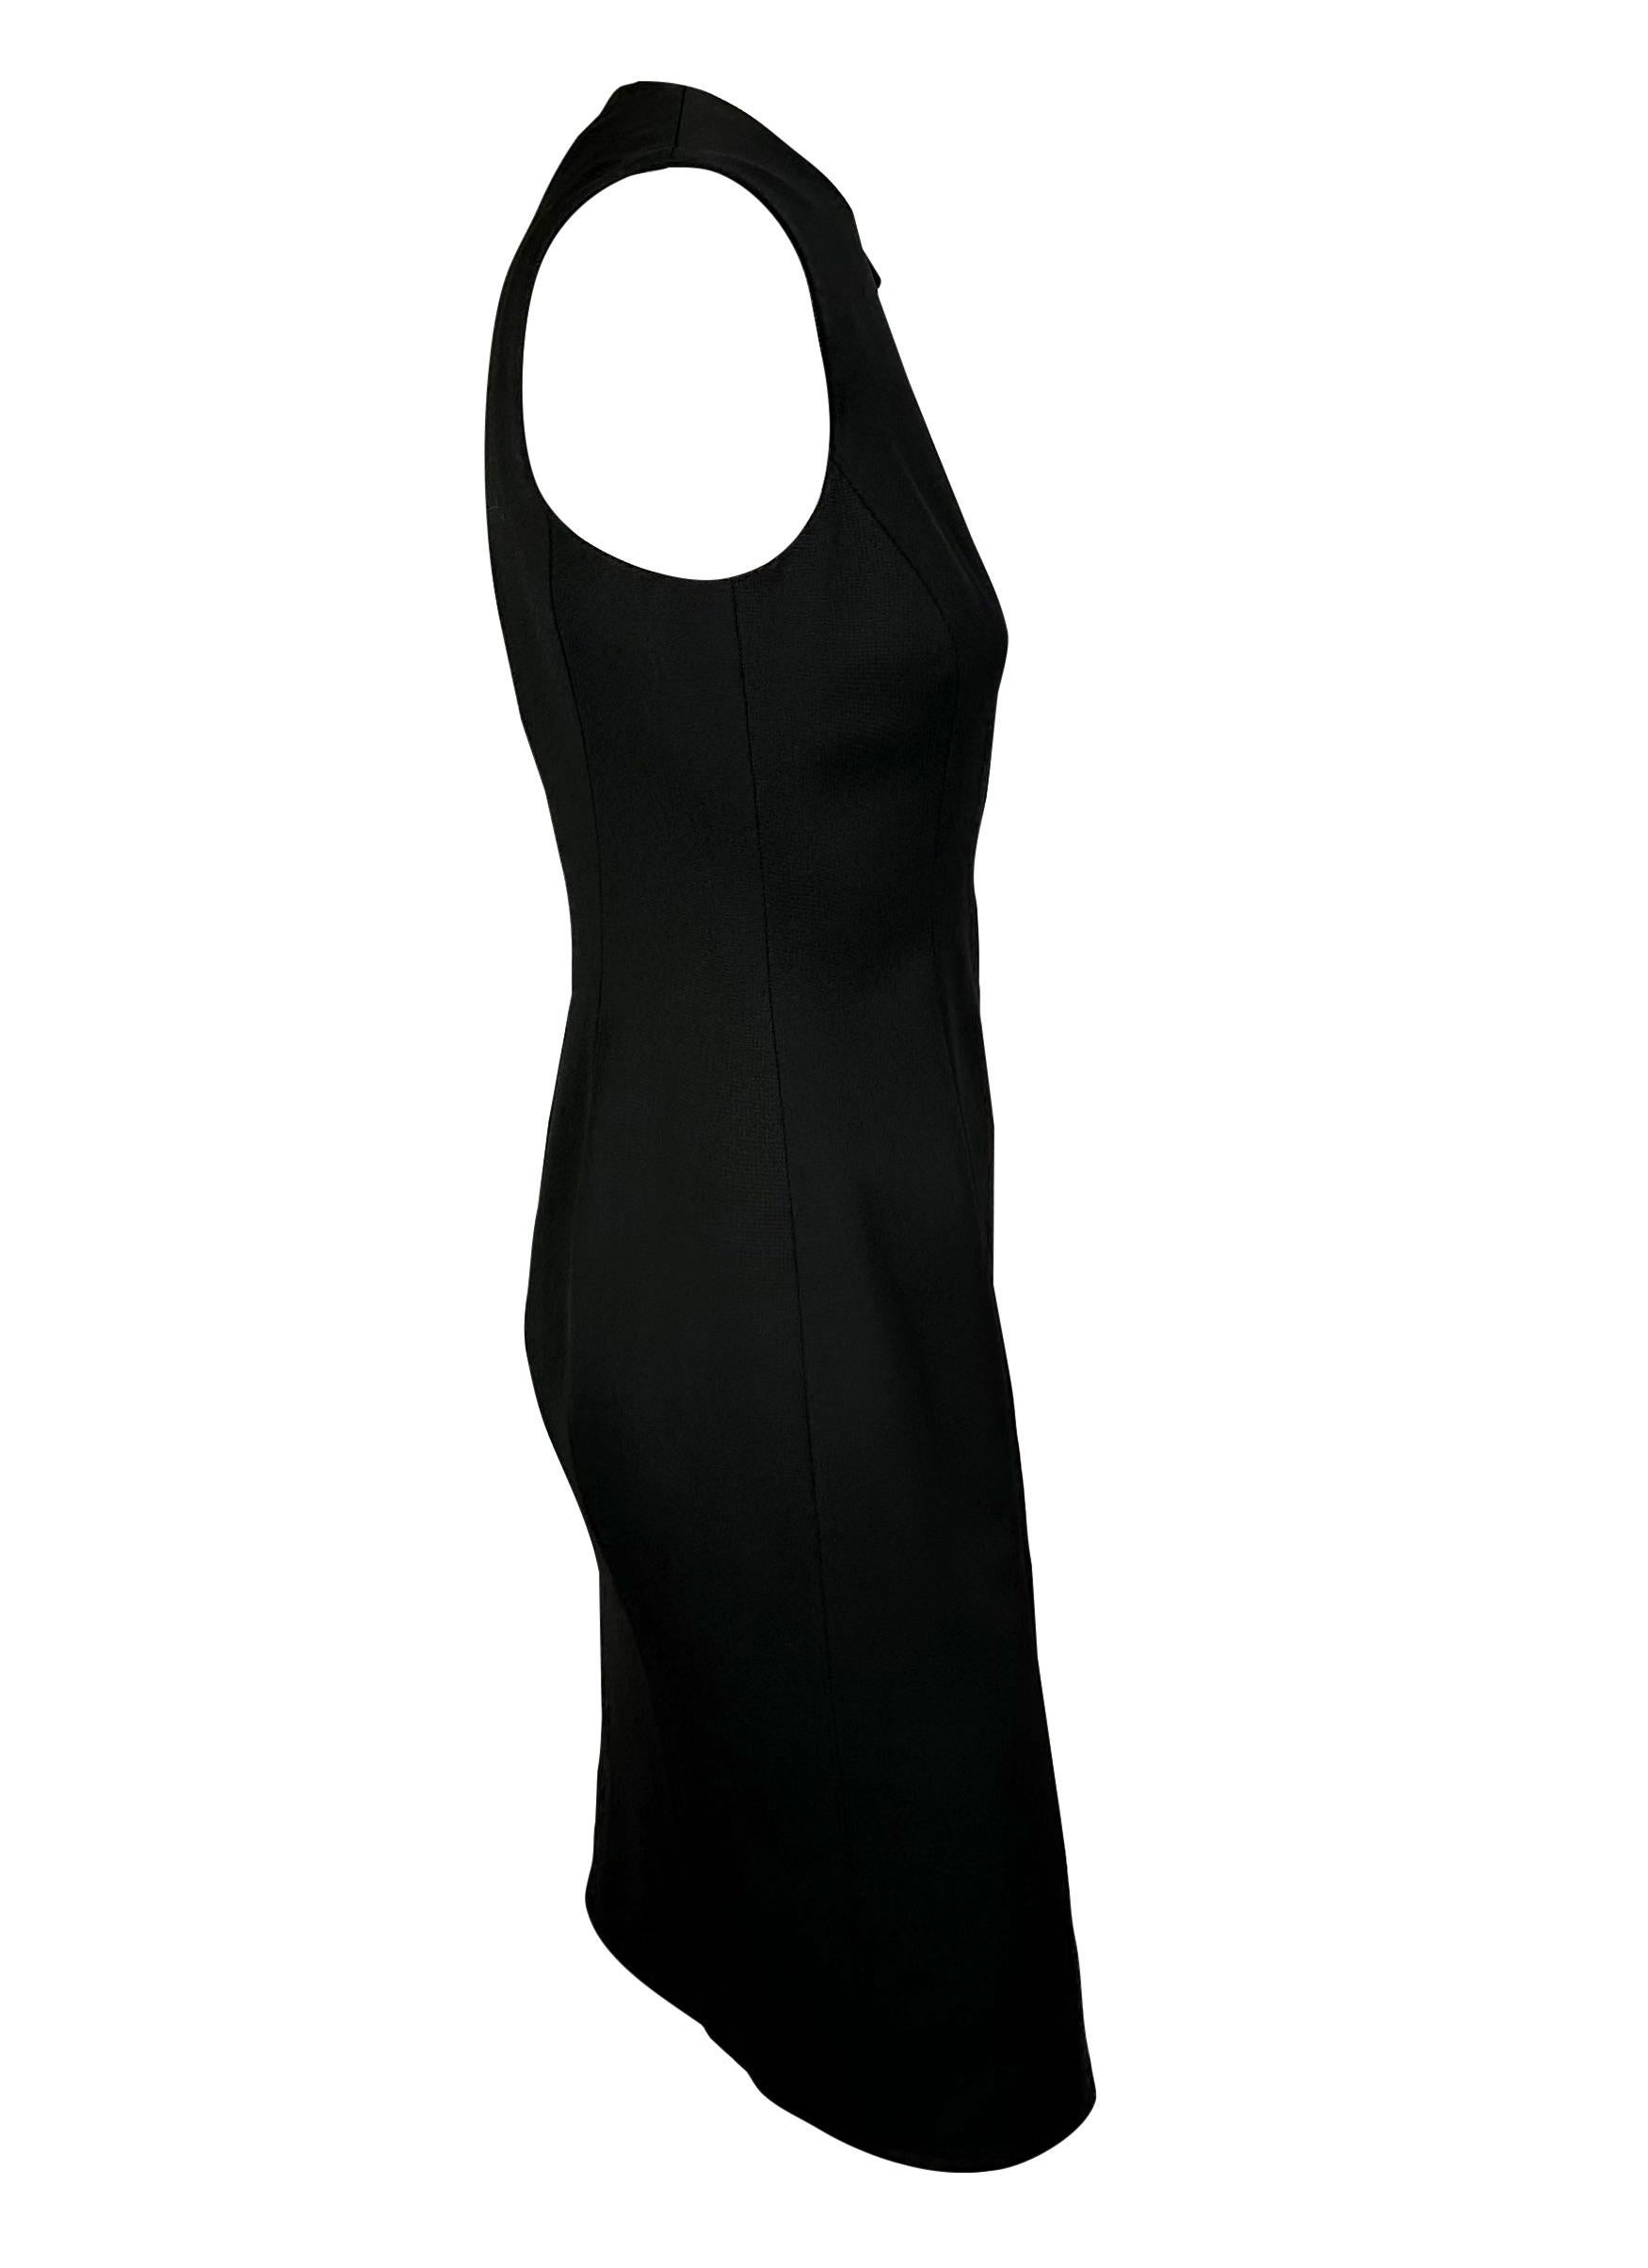 Présentation d'une robe tunique en laine noire Versace, créée par Donatella Versace. Dans la collection automne/hiver 2004, Donatella a réimaginé les boucles utilisées par son frère dans sa collection automne/hiver 1992, en ajoutant des boucles